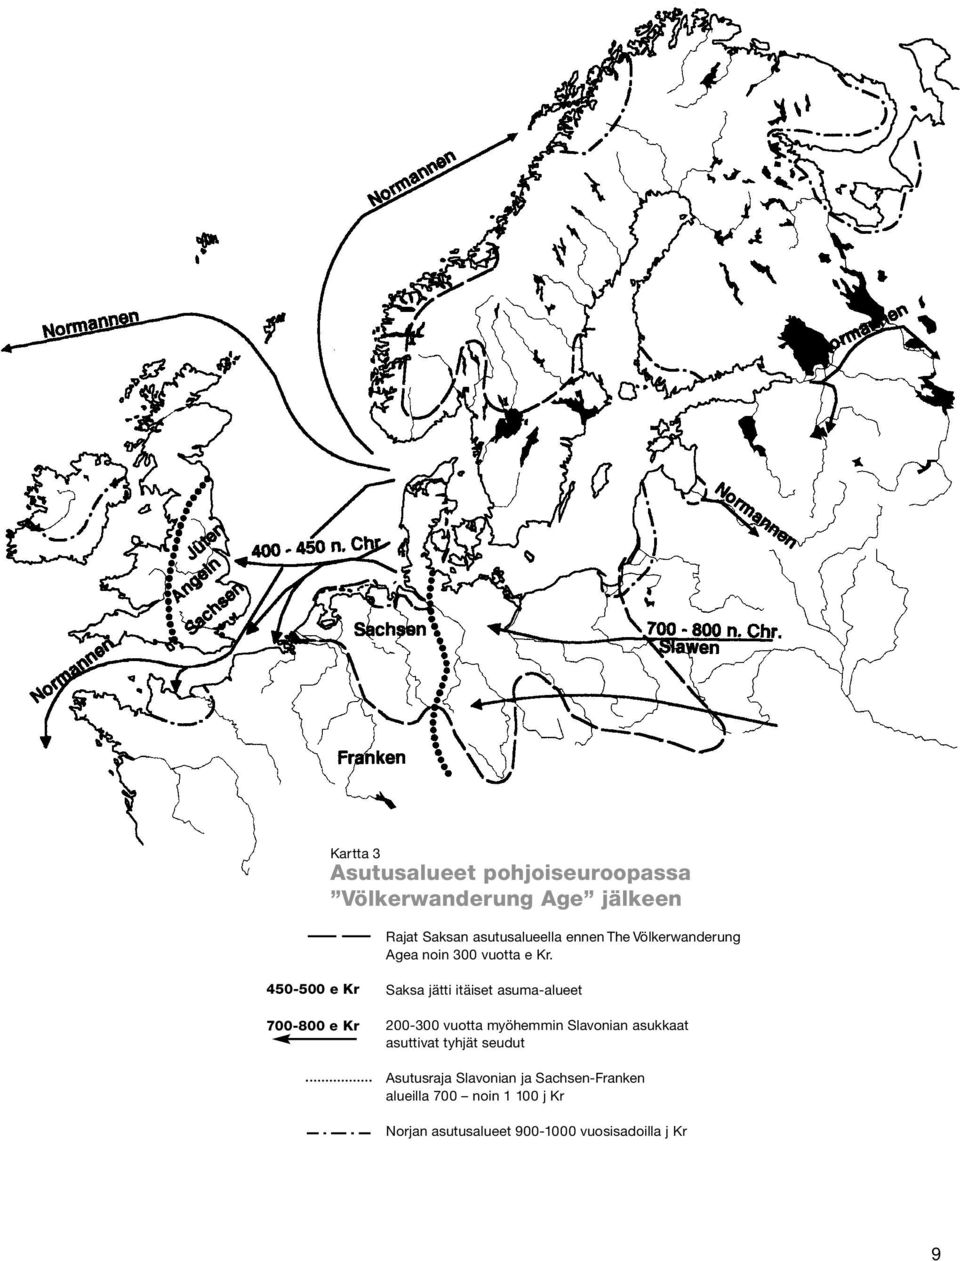 450-500 e Kr 700-800 e Kr Saksa jätti itäiset asuma-alueet 200-300 vuotta myöhemmin Slavonian